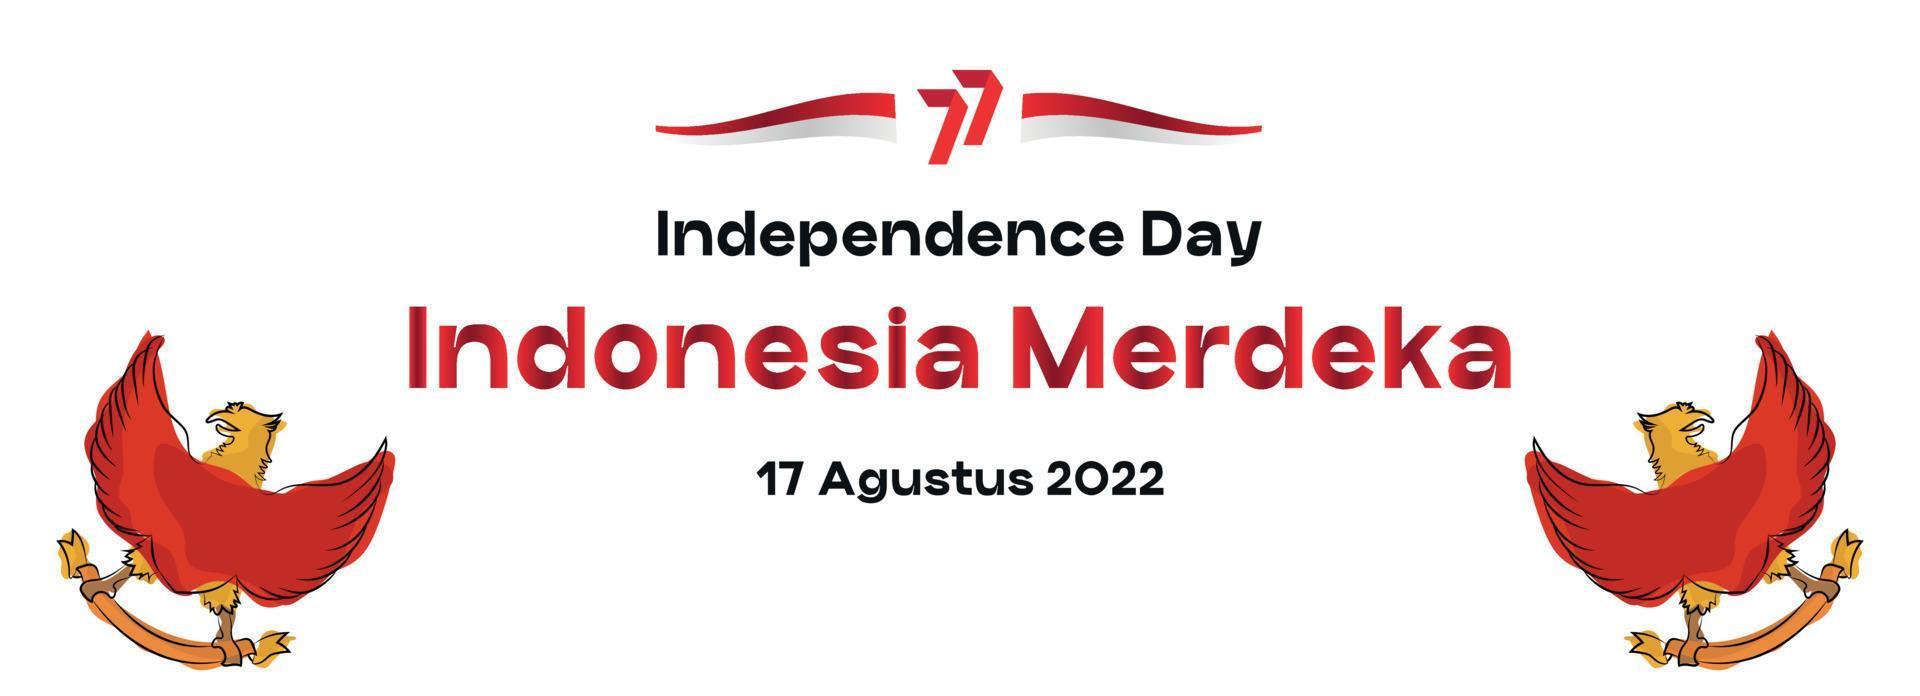 kreative bannergeisterillustration des indonesischen 77. unabhängigkeitstages. geeignet für Inhalte Social Media vektor